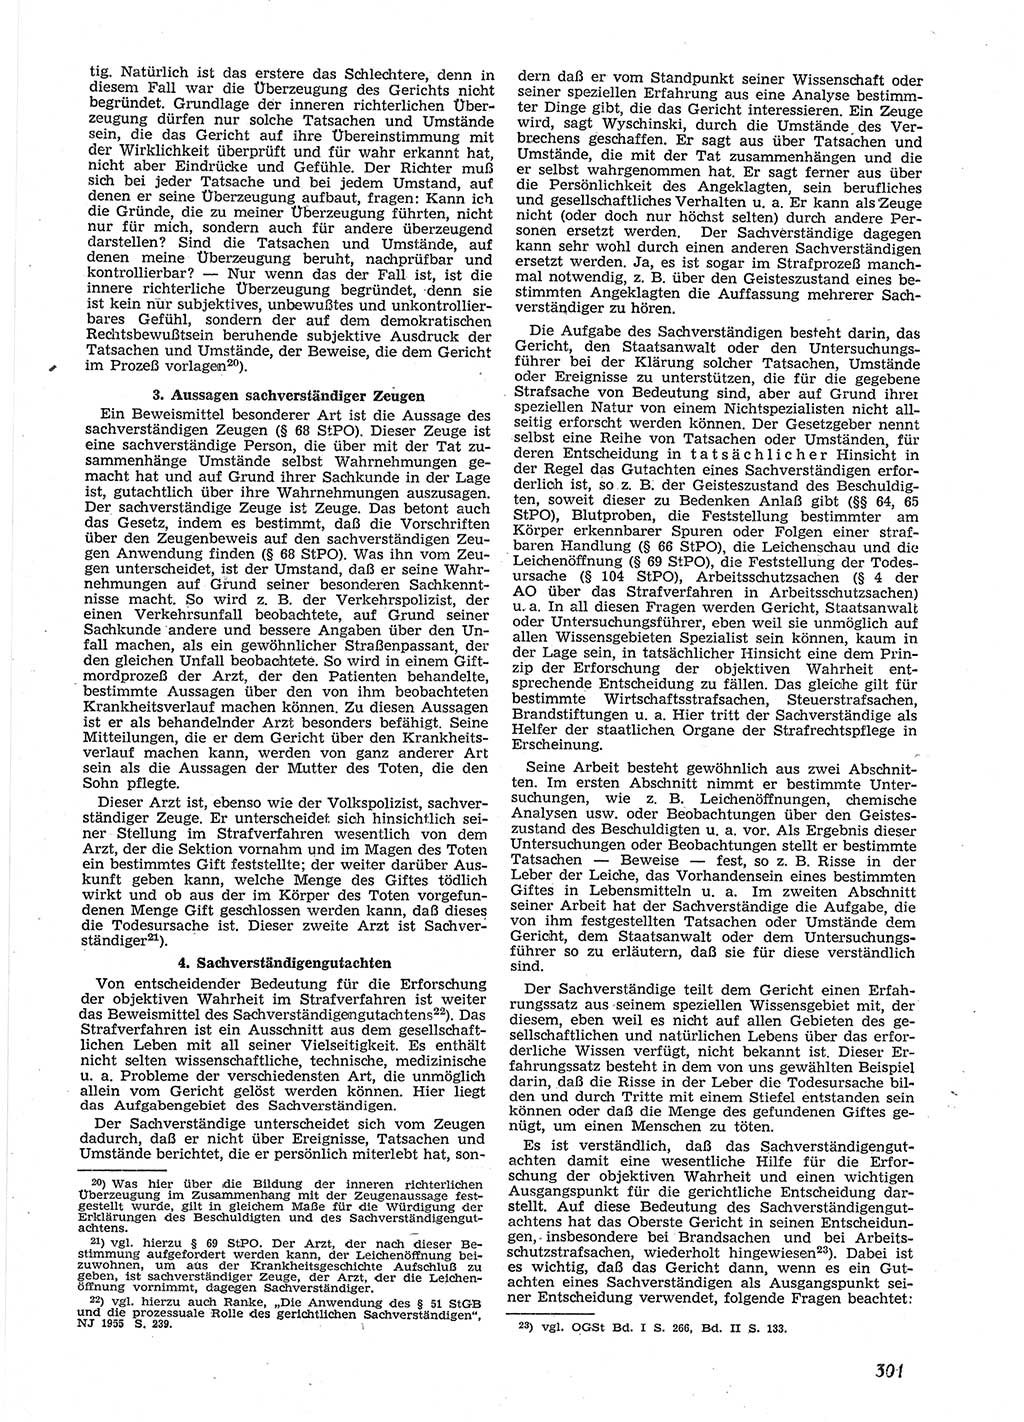 Neue Justiz (NJ), Zeitschrift für Recht und Rechtswissenschaft [Deutsche Demokratische Republik (DDR)], 9. Jahrgang 1955, Seite 301 (NJ DDR 1955, S. 301)